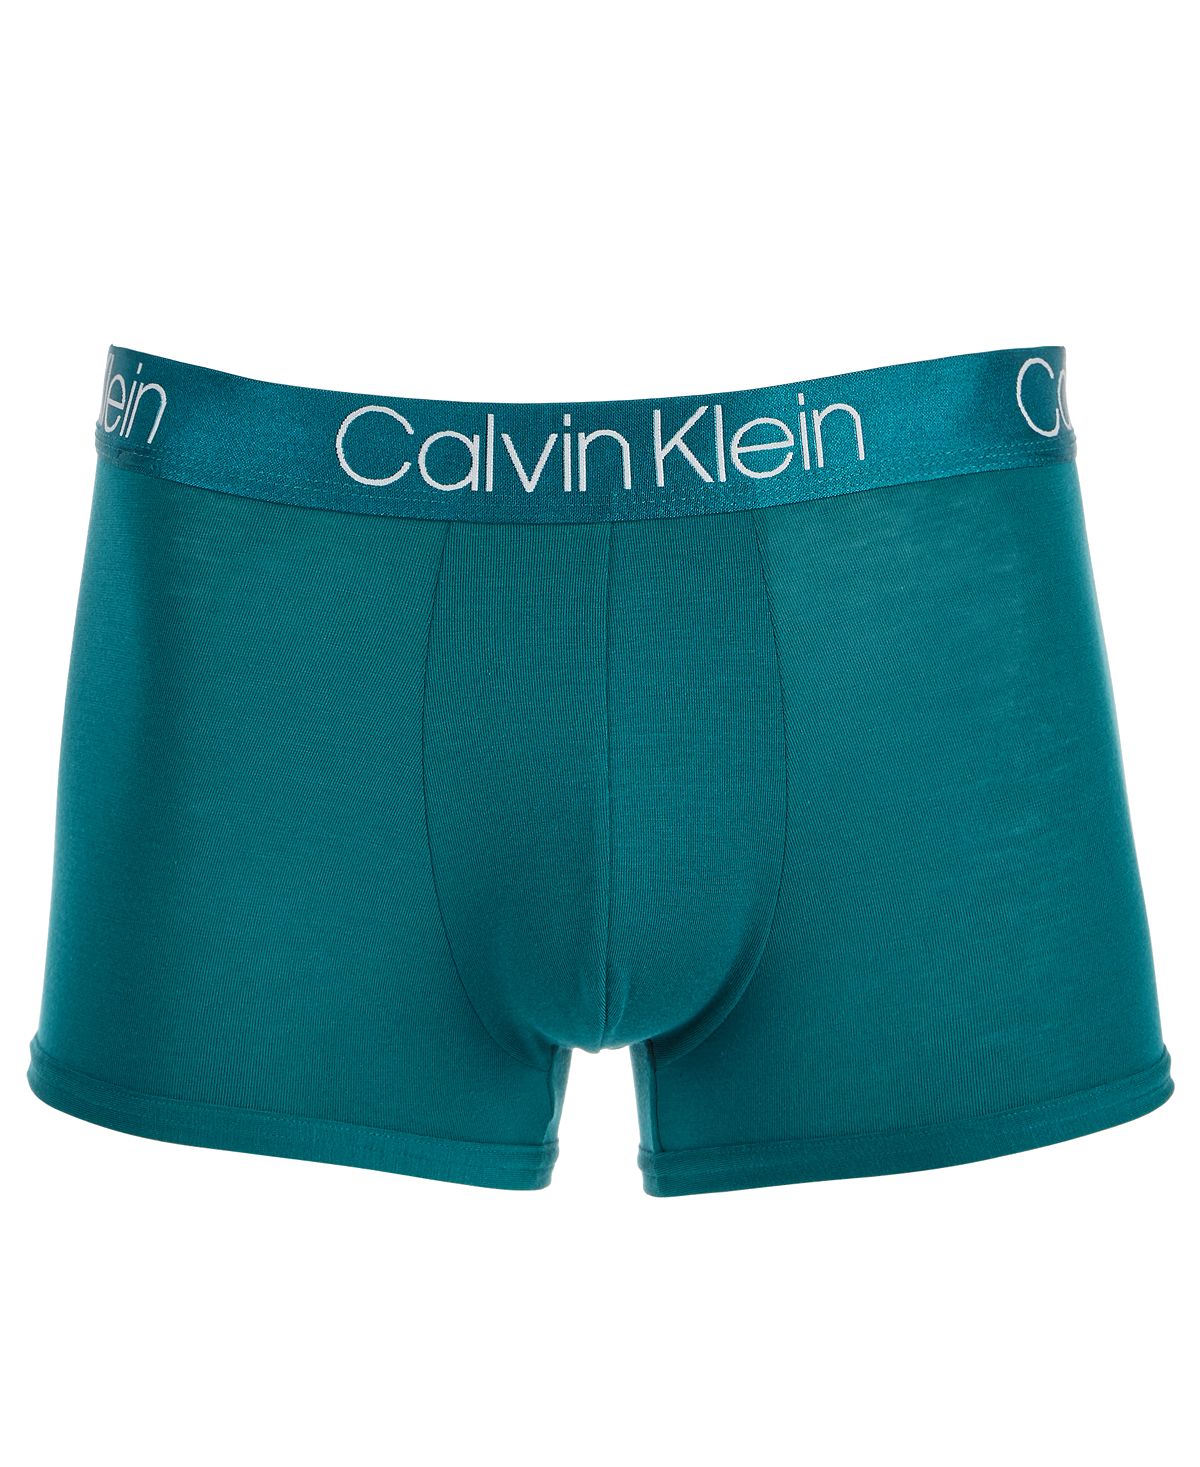 Calvin Klein Men’s Ultra-soft Modal Trunks Teal Diamond